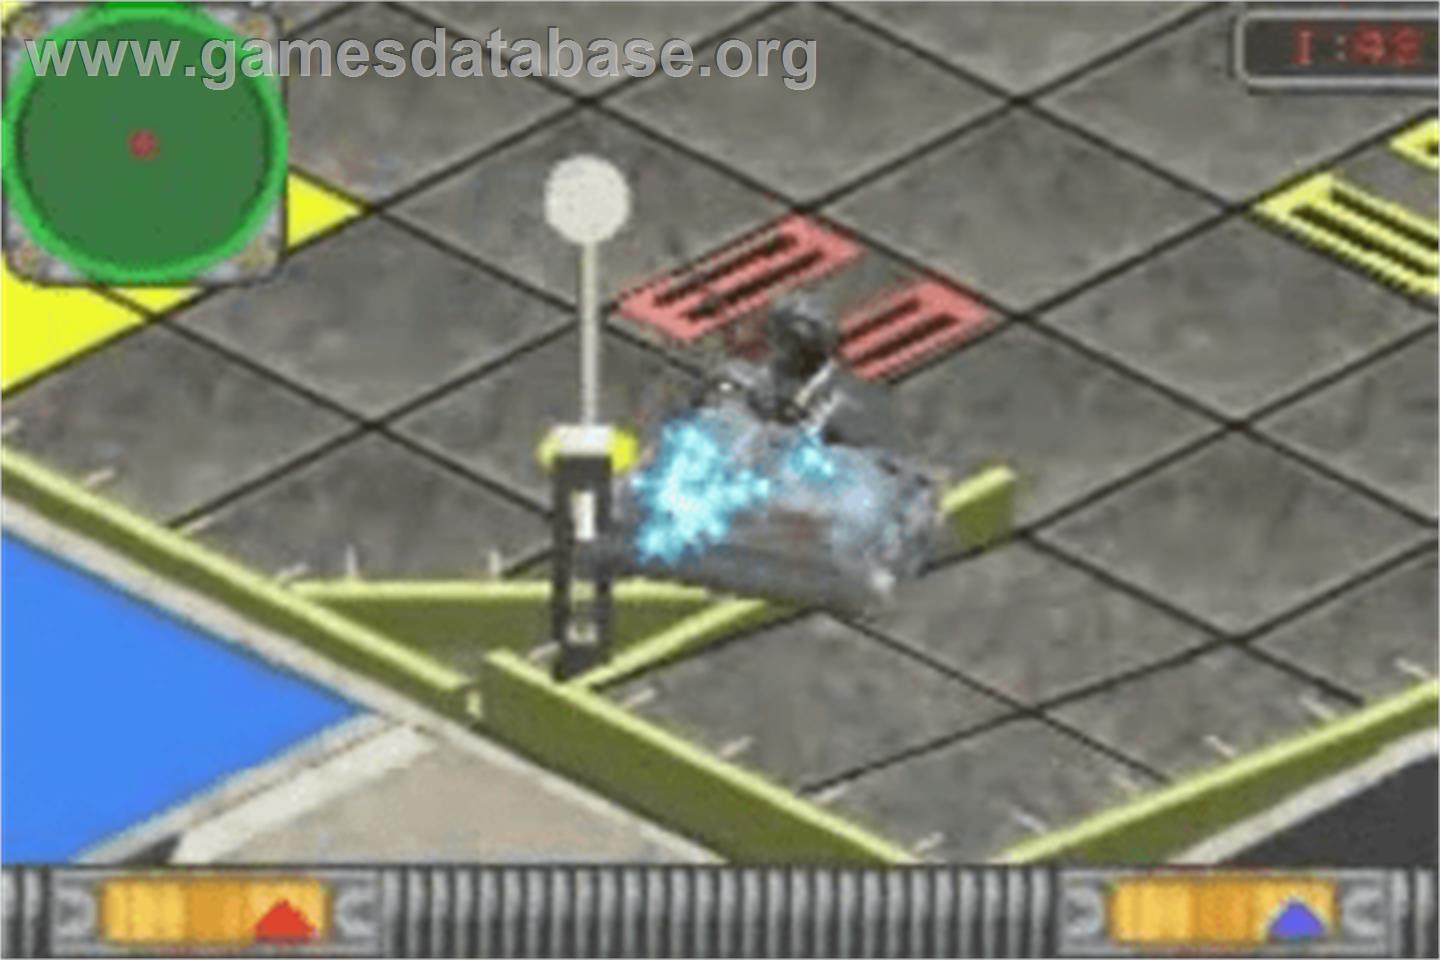 BattleBots: Design & Destroy - Nintendo Game Boy Advance - Artwork - In Game